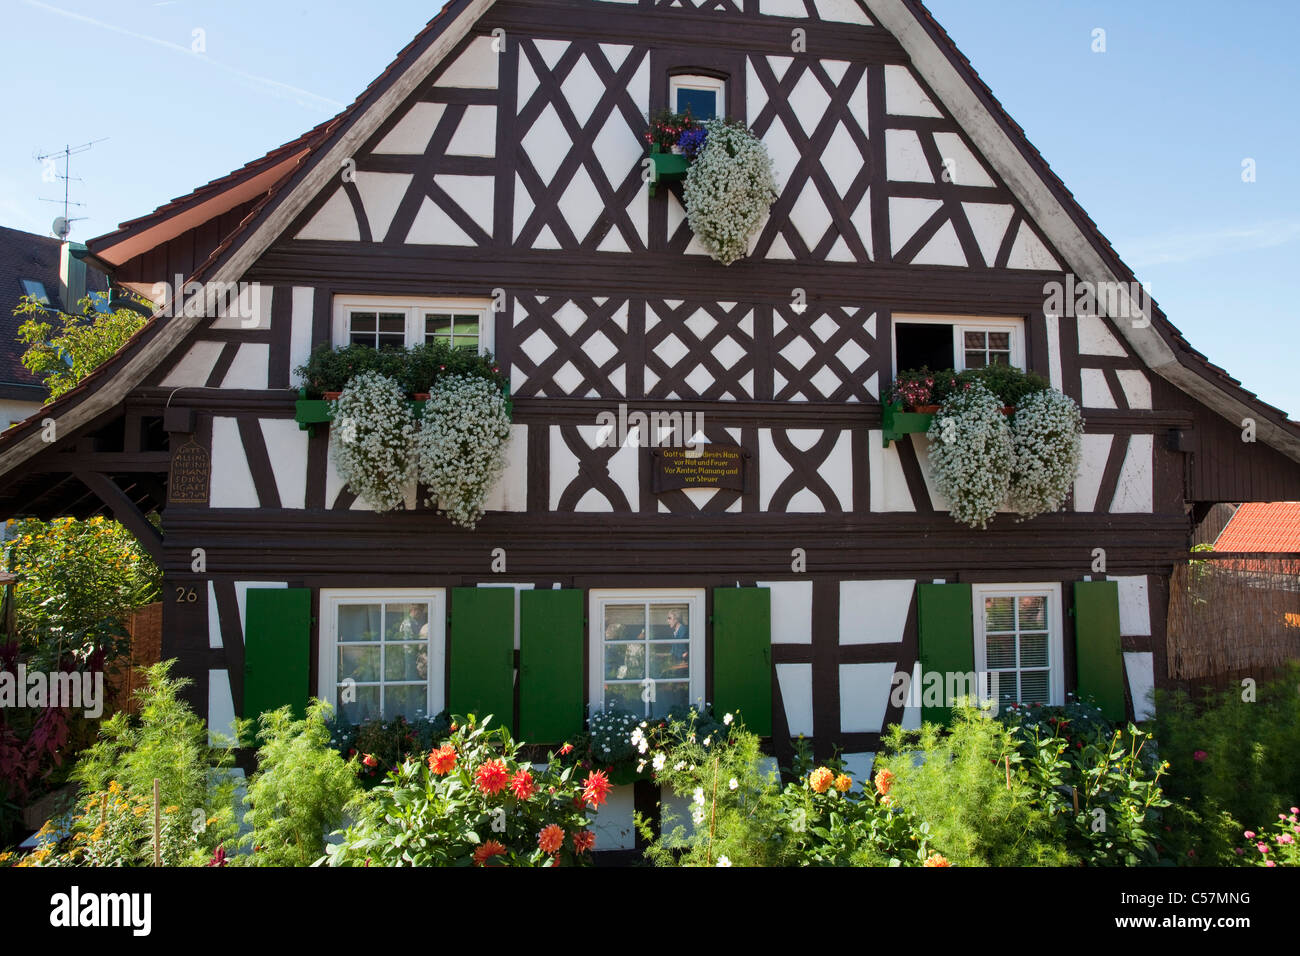 Fassade von einem Bauernhaus, Facherkhaus mit Blumen in Sasbachwalden, Facade of a half-timbered house with flower decoration Stock Photo